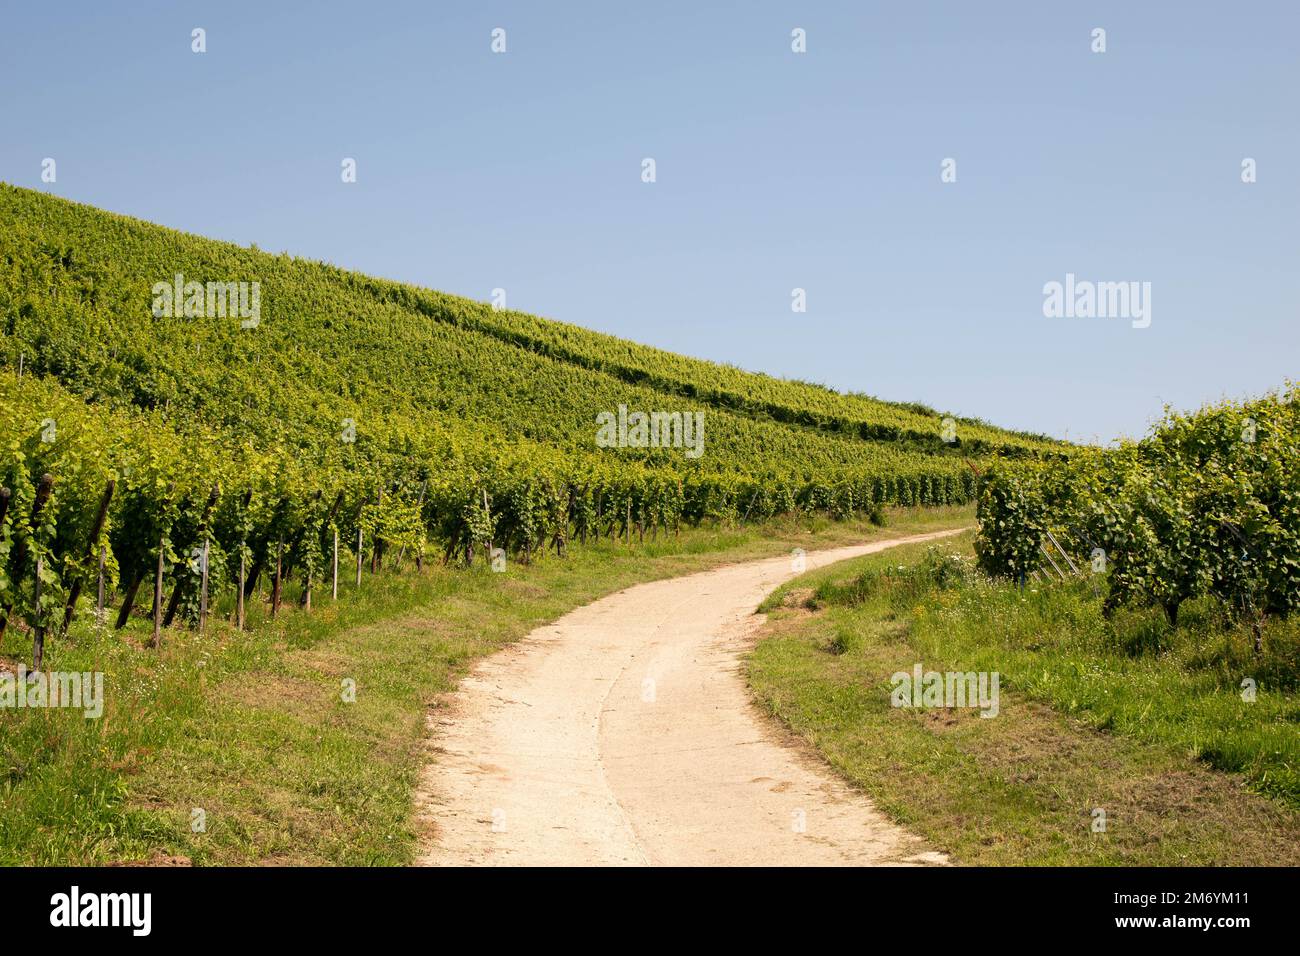 Vignoble prenant le soleil en Alsace.région viticole en France.paysage à couper le souffle avec des collines remplies de vignes en lumière dorée. Belle vue sur le vignoble Banque D'Images